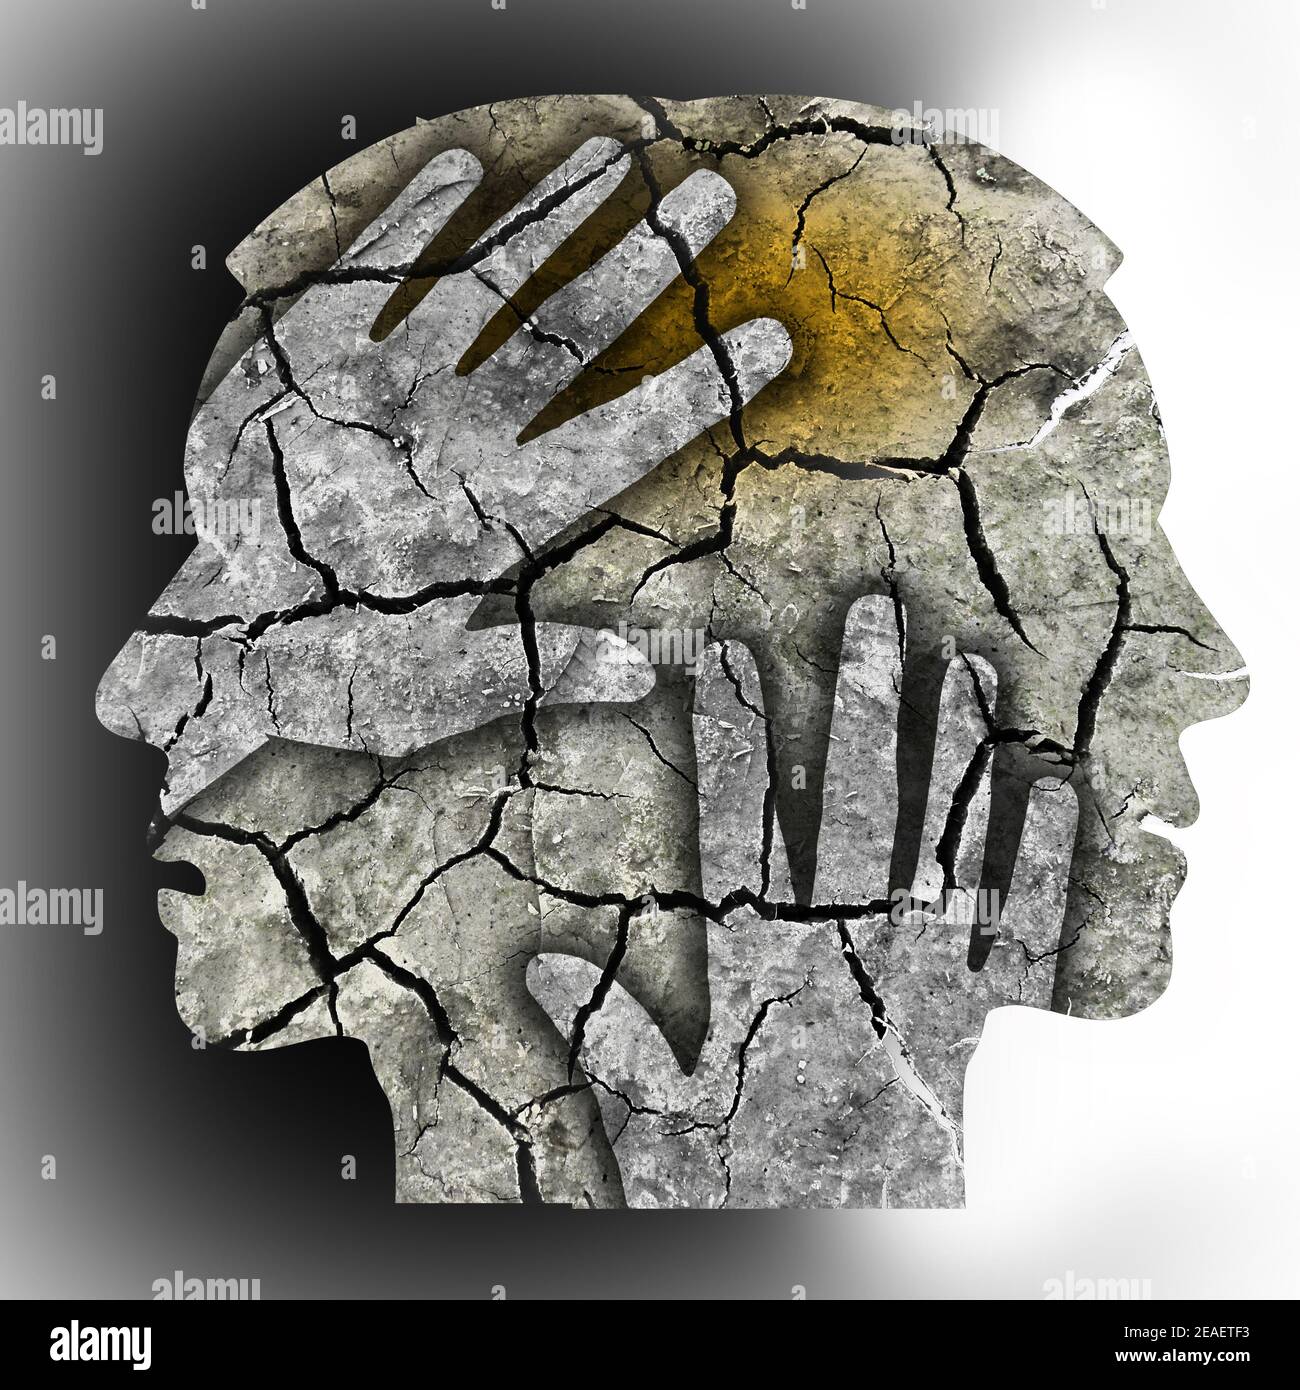 Schizophrenie Kopfsilhouetten. Mann, der seinen Kopf hält.Foto-Montage mit trockener rissiger Erde, die Schizophrenie symbolisiert Depression, Kopfschmerzen Stockfoto